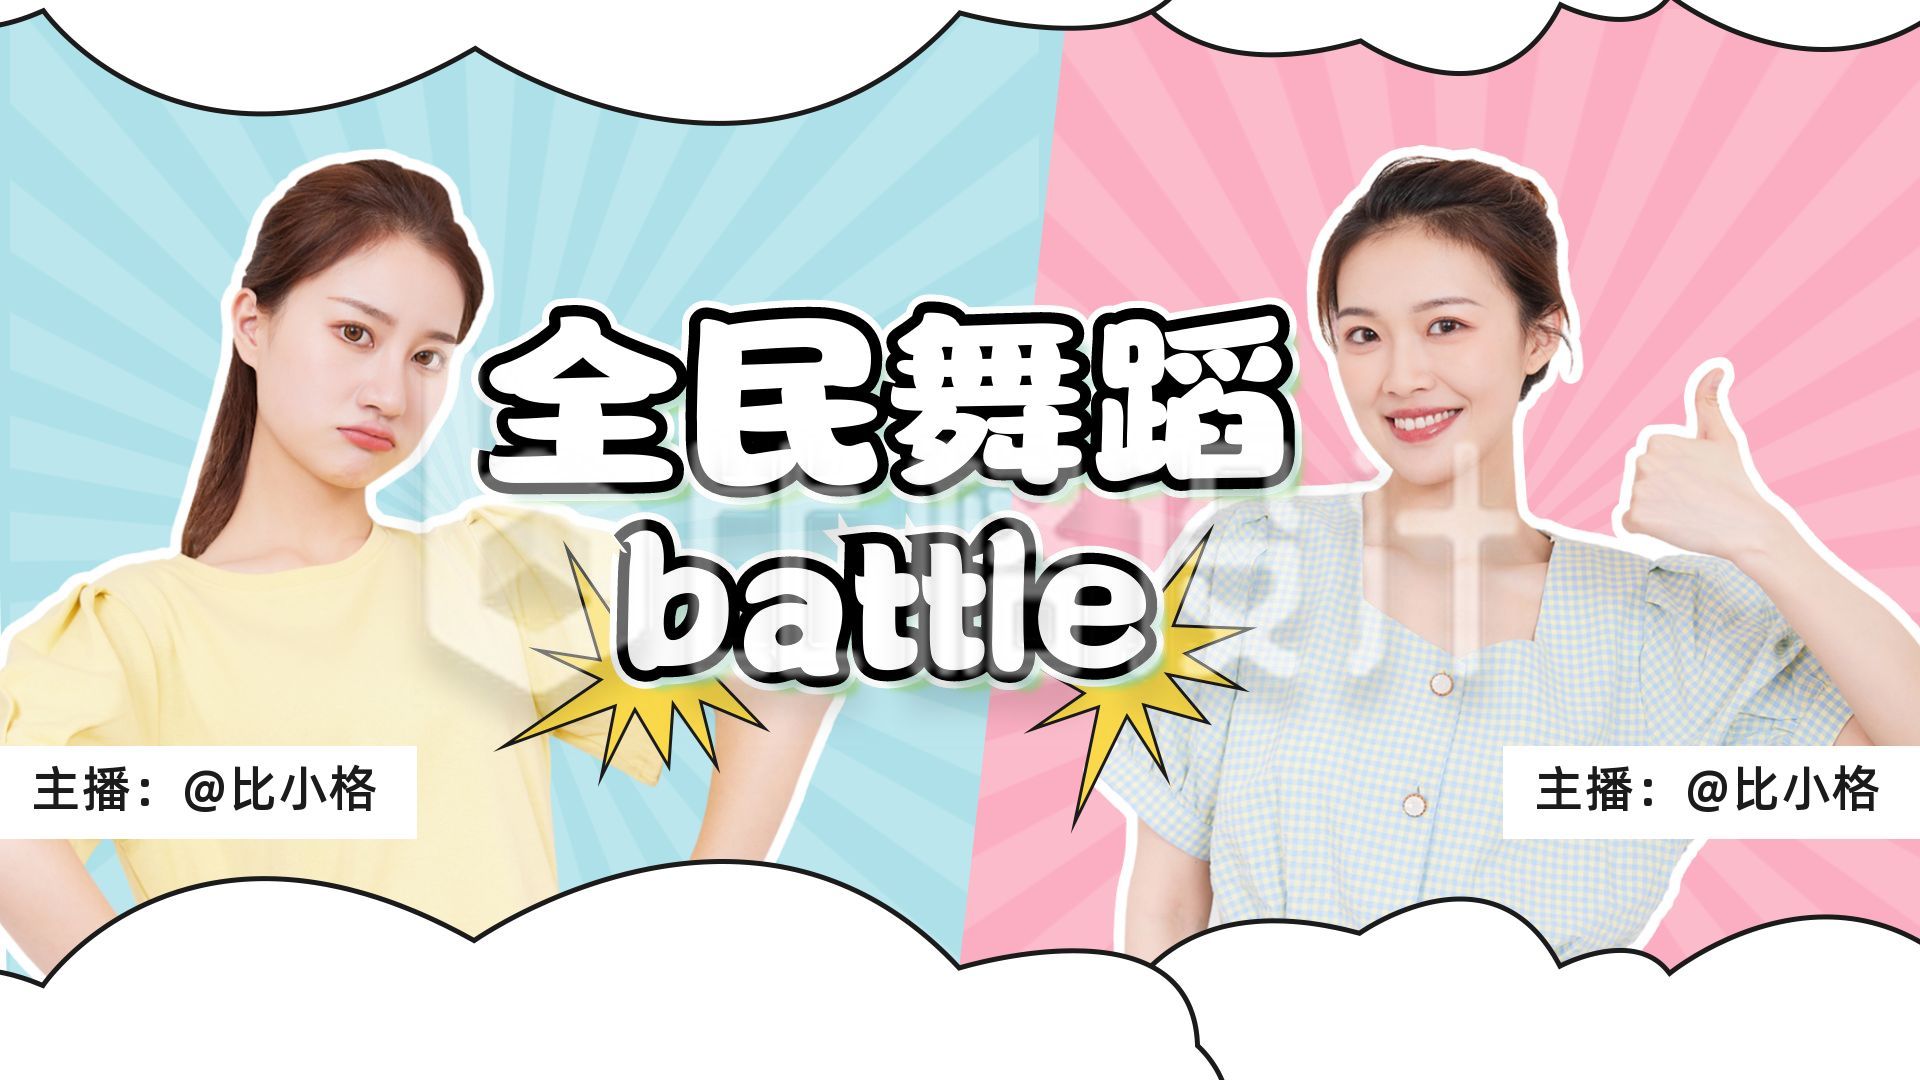 全民舞蹈battle双人PK活动直播视频封面